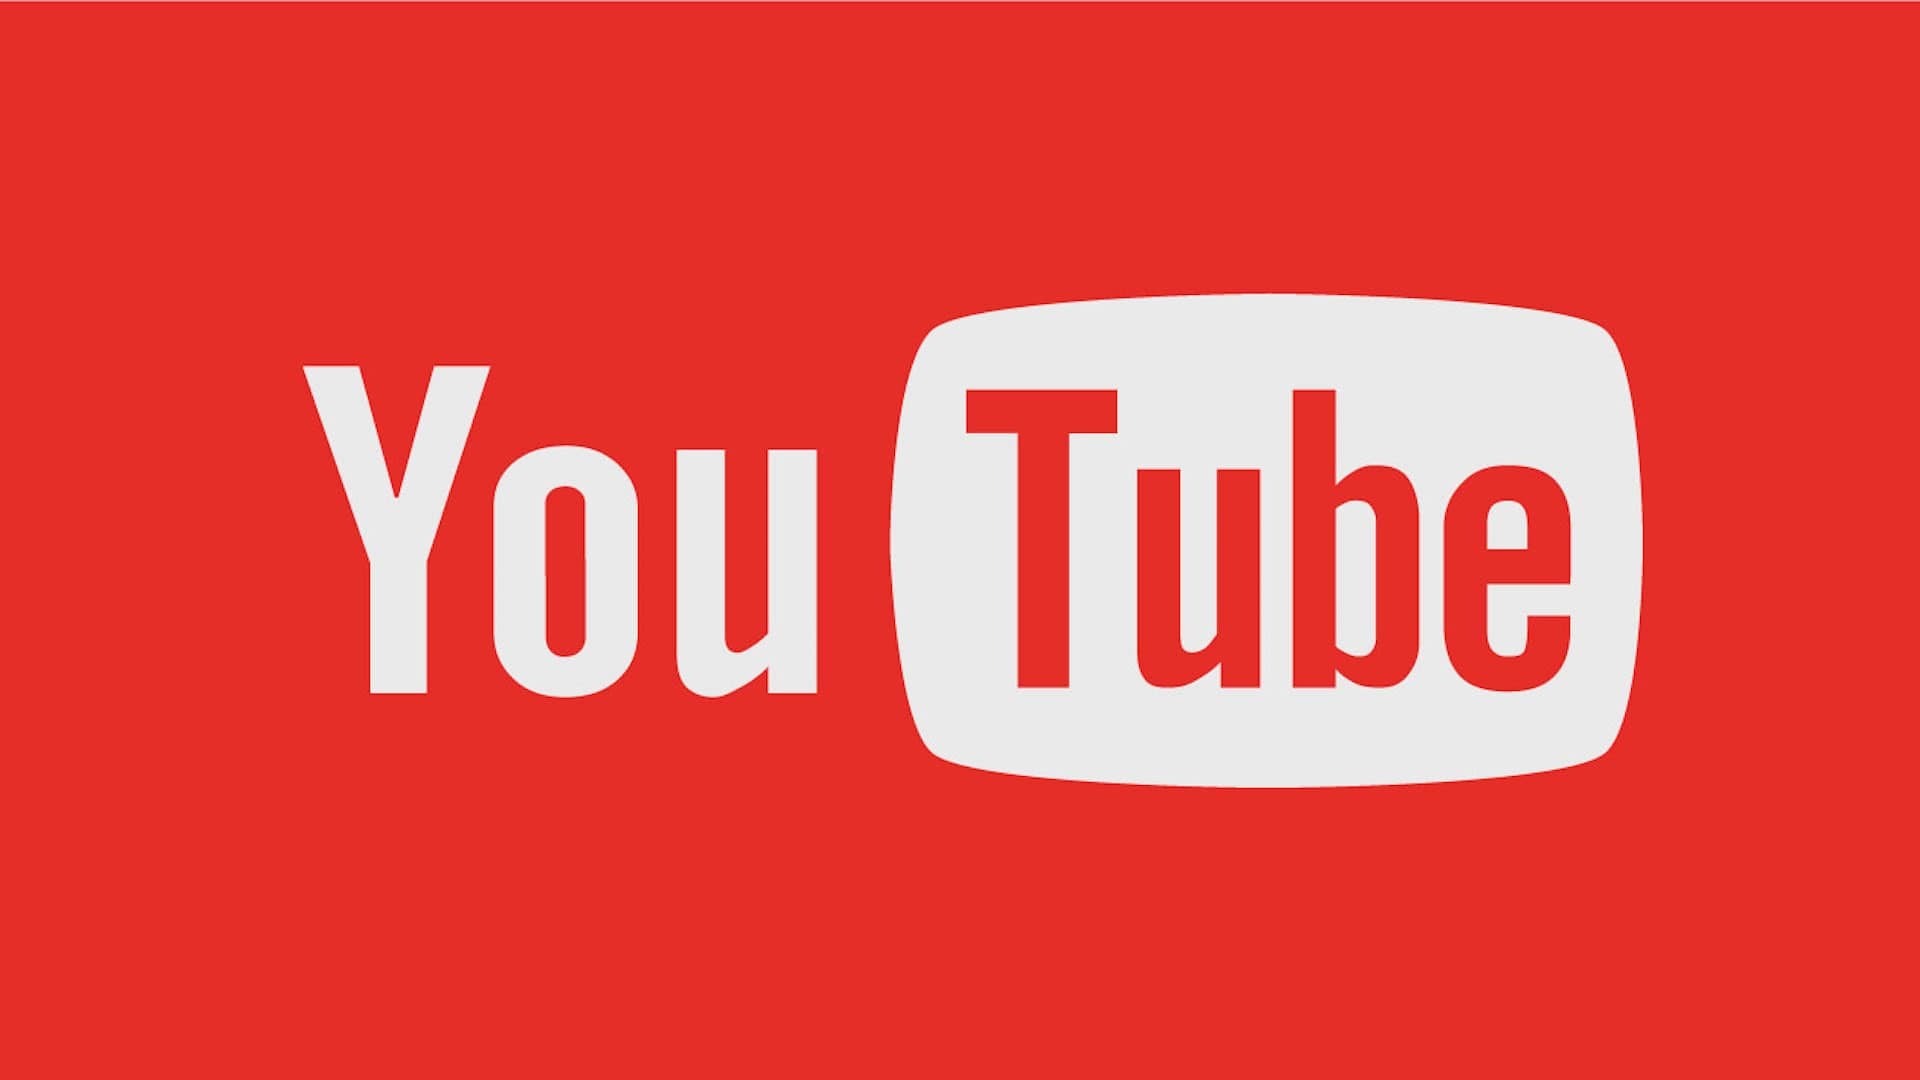 YouTube daha fazla ceza almamak için Türkiye'de temsilci atayacağını açıkladı